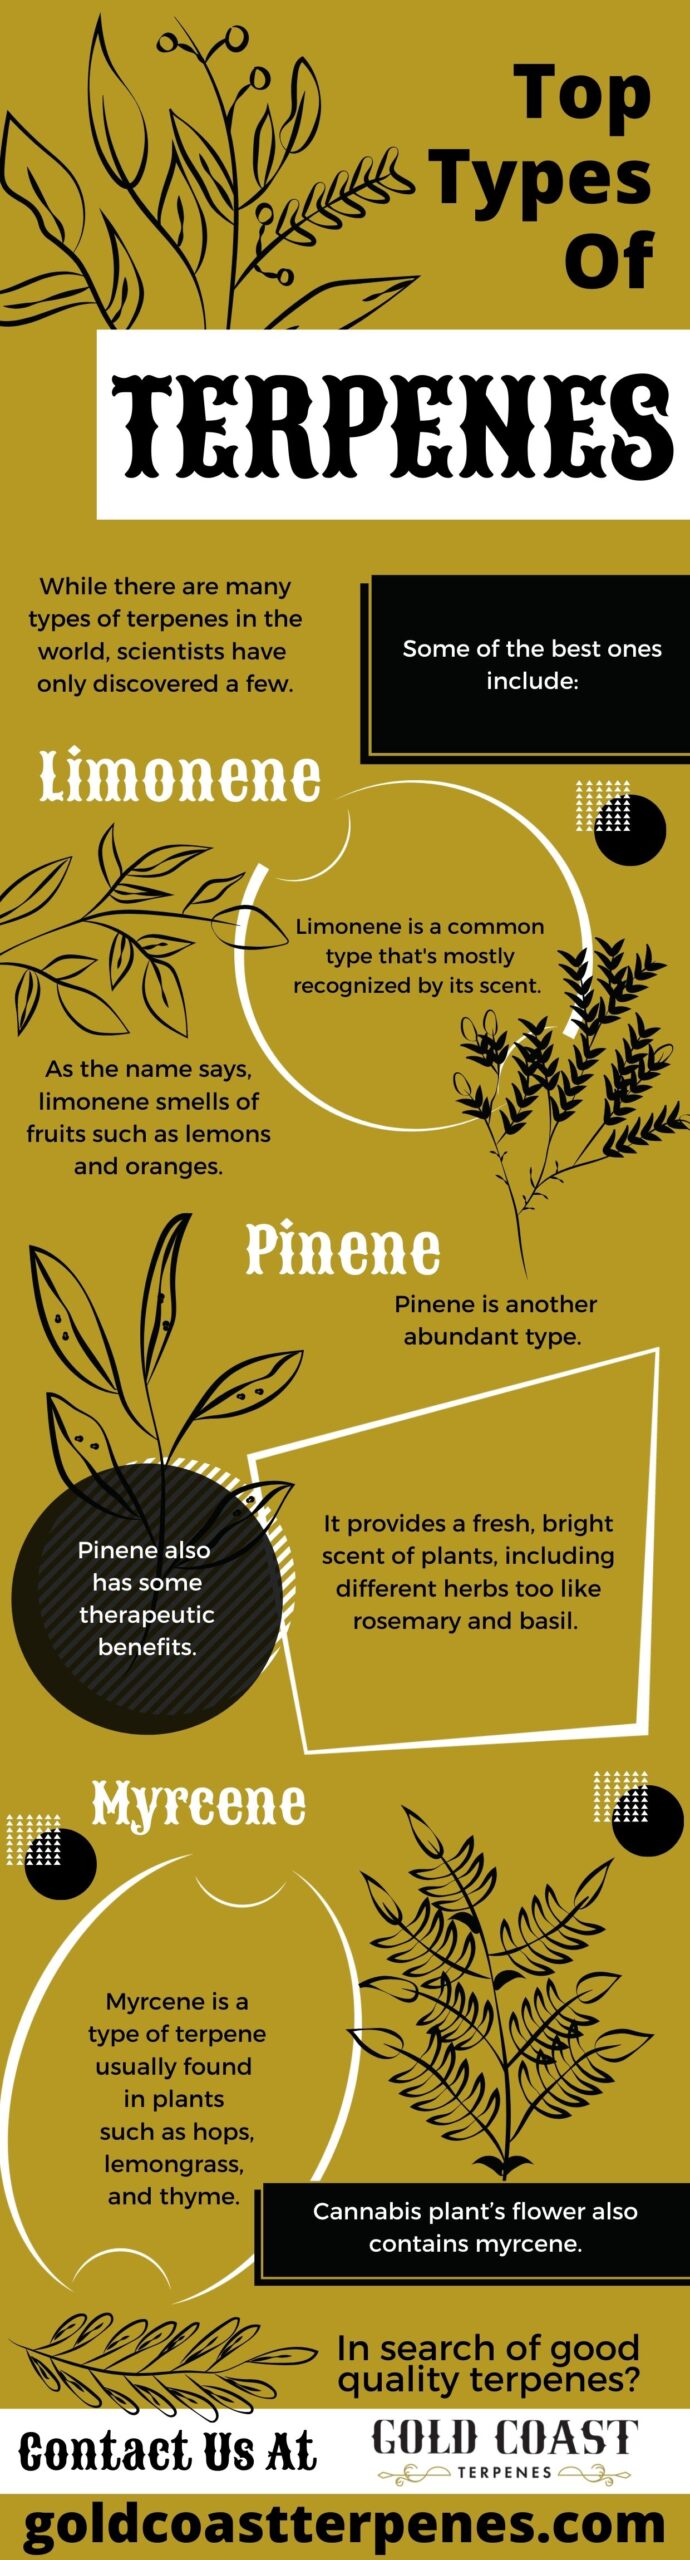 Top Types Of Terpenes